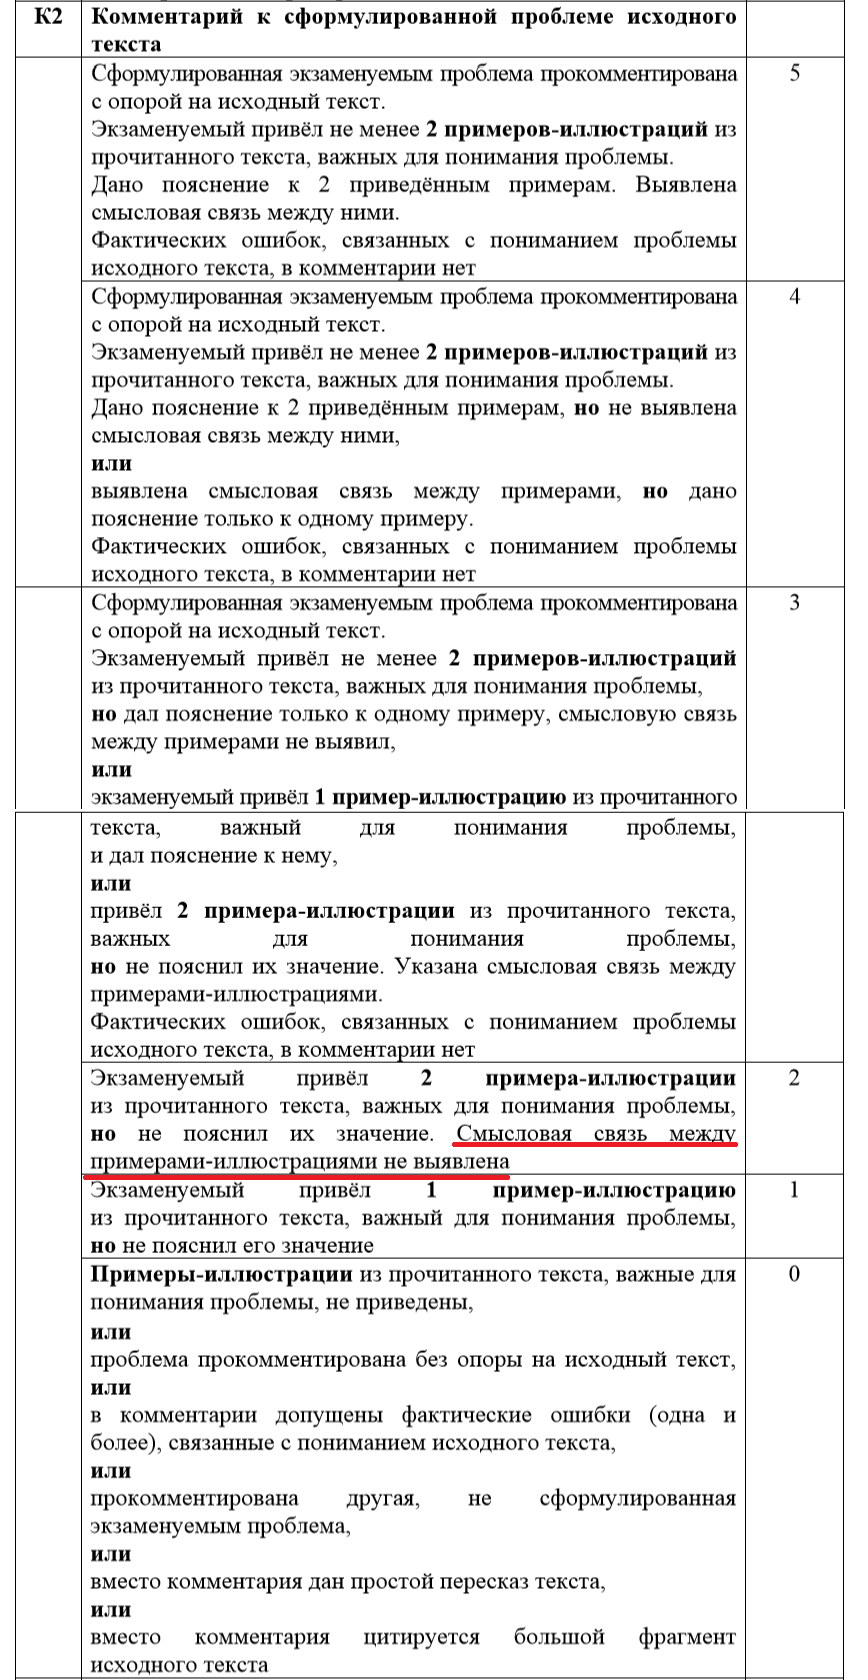 ЕГЭ по русскому языку 2020 изменения